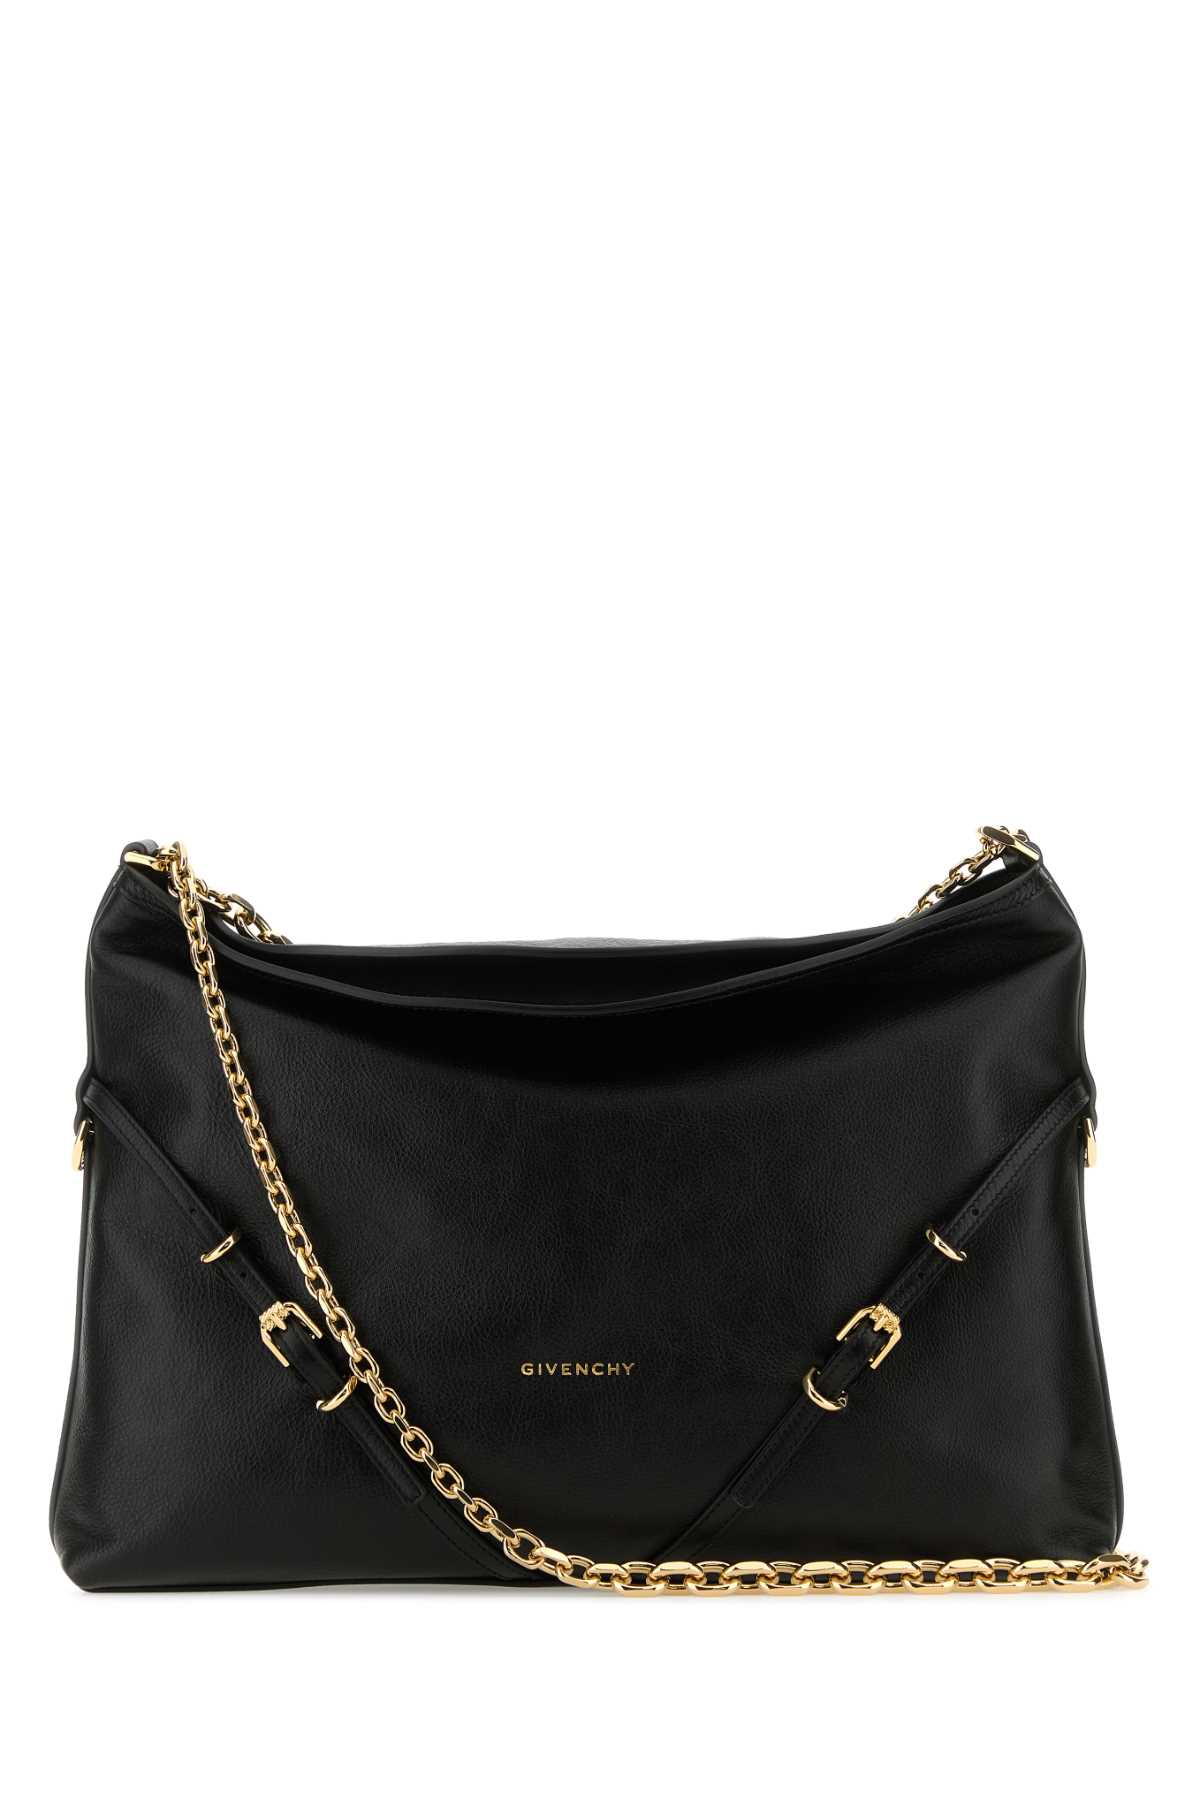 Shop Givenchy Black Leather Voyou Chain Shoulder Bag